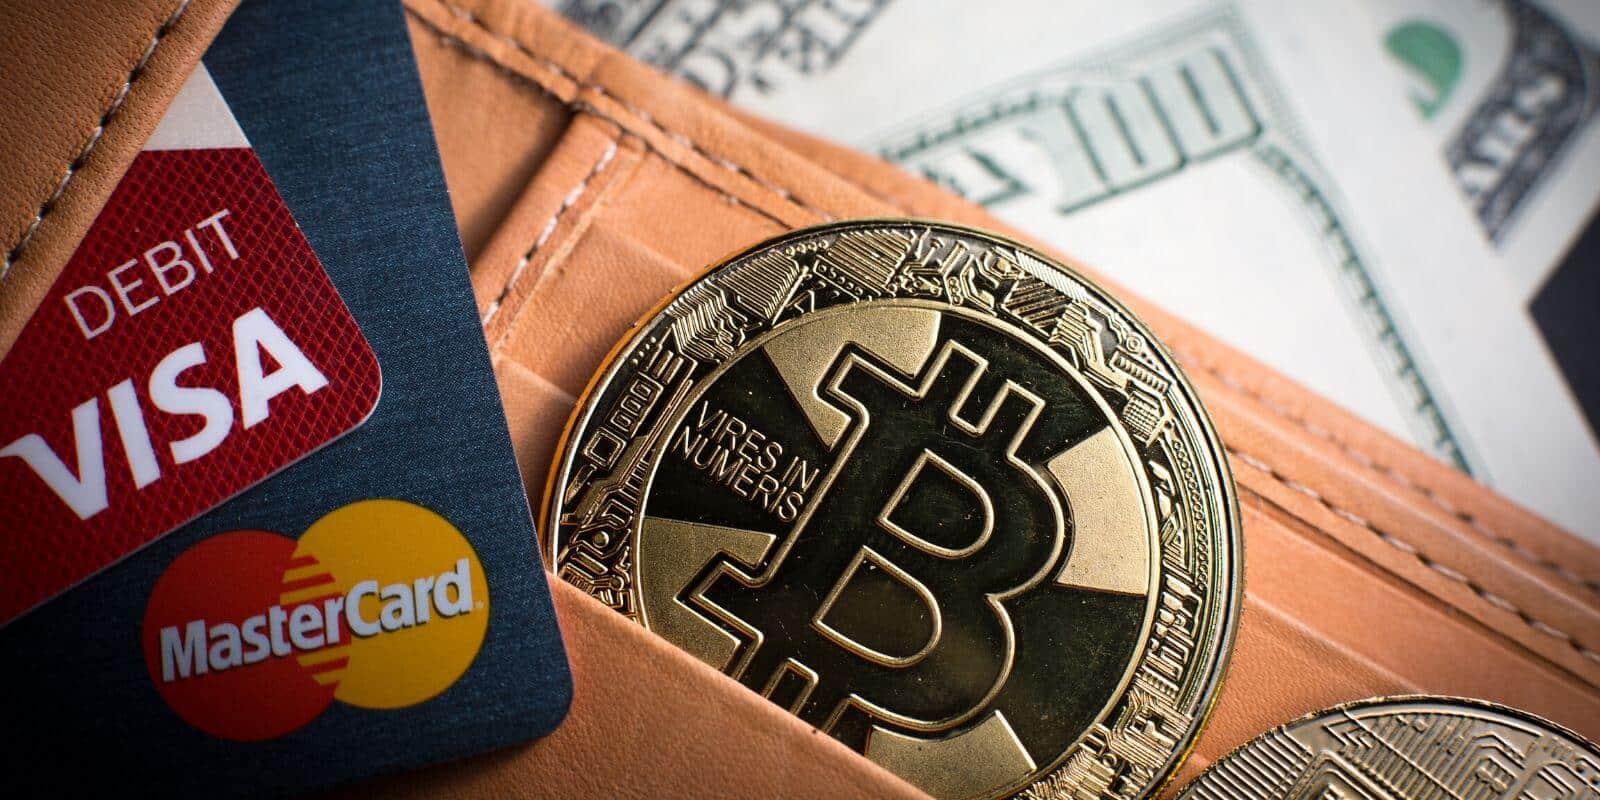 acheter des bitcoins par carte bancaire lcl